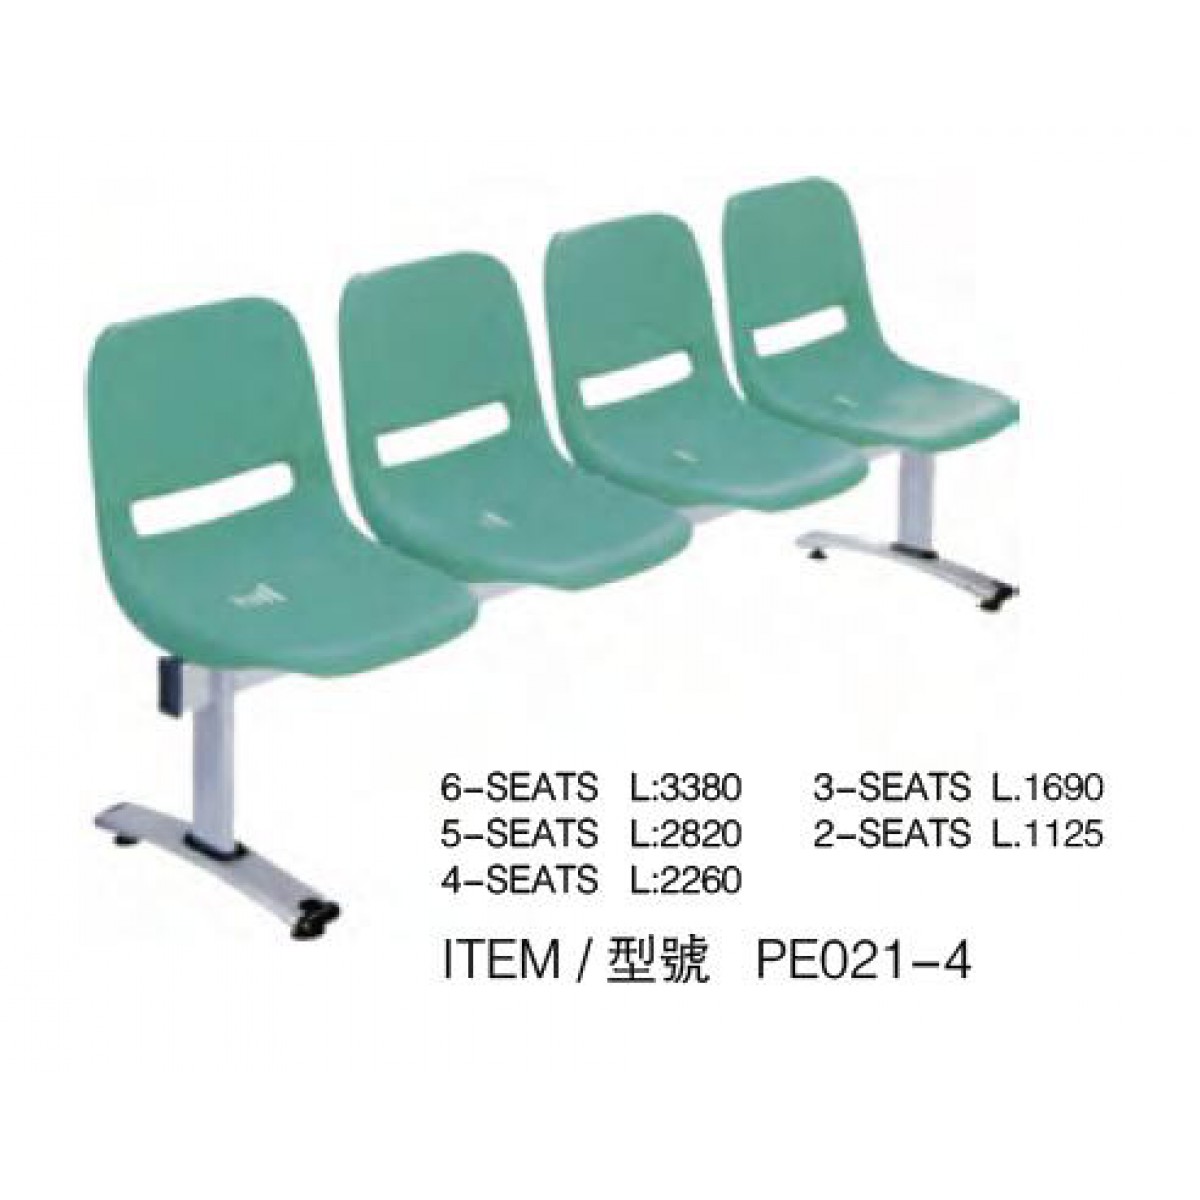 公共排椅(PE021-4)